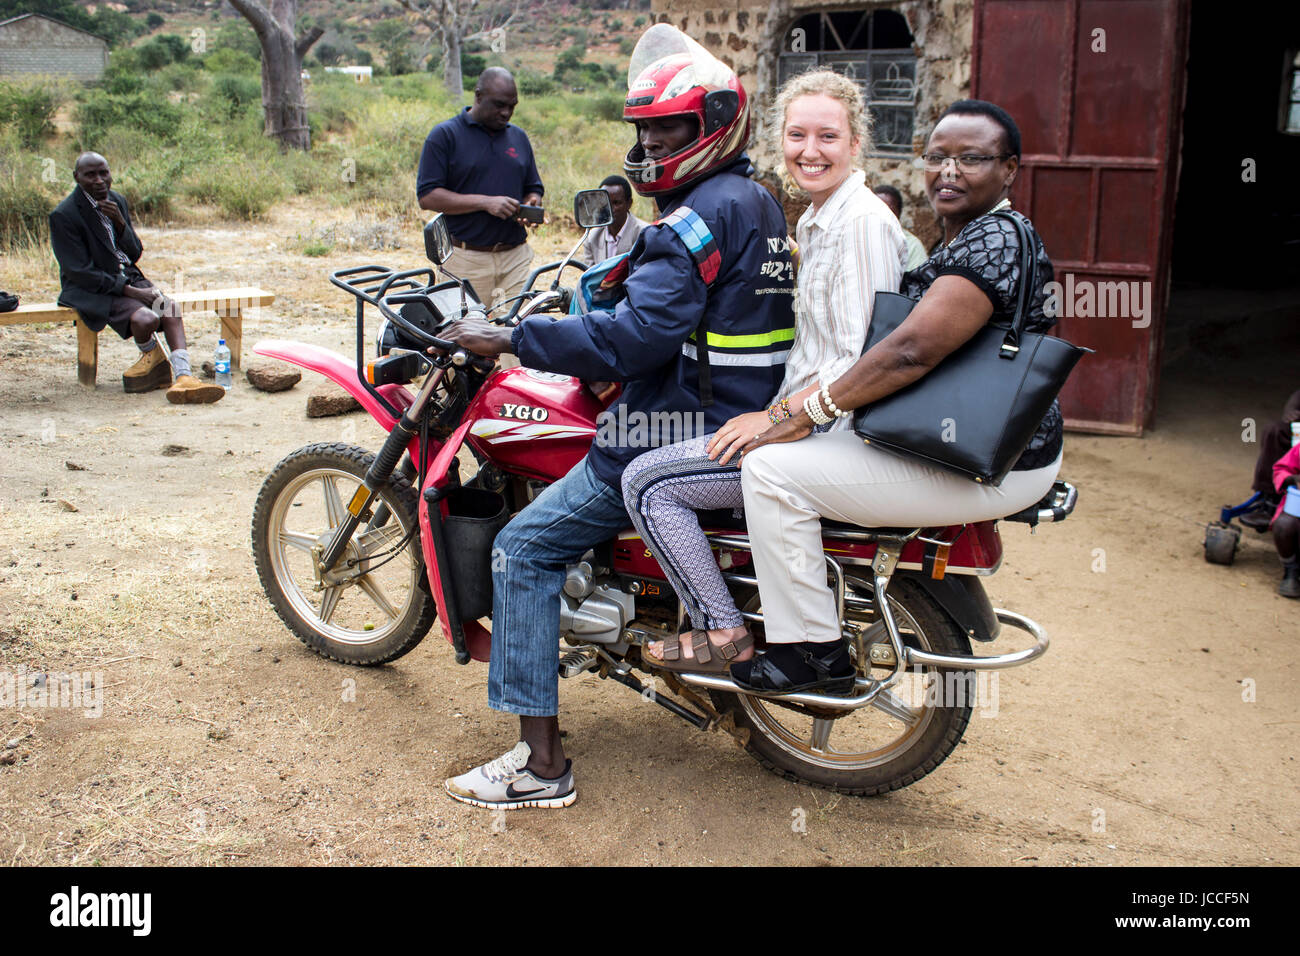 Images taken in Embu, Kenya Stock Photo